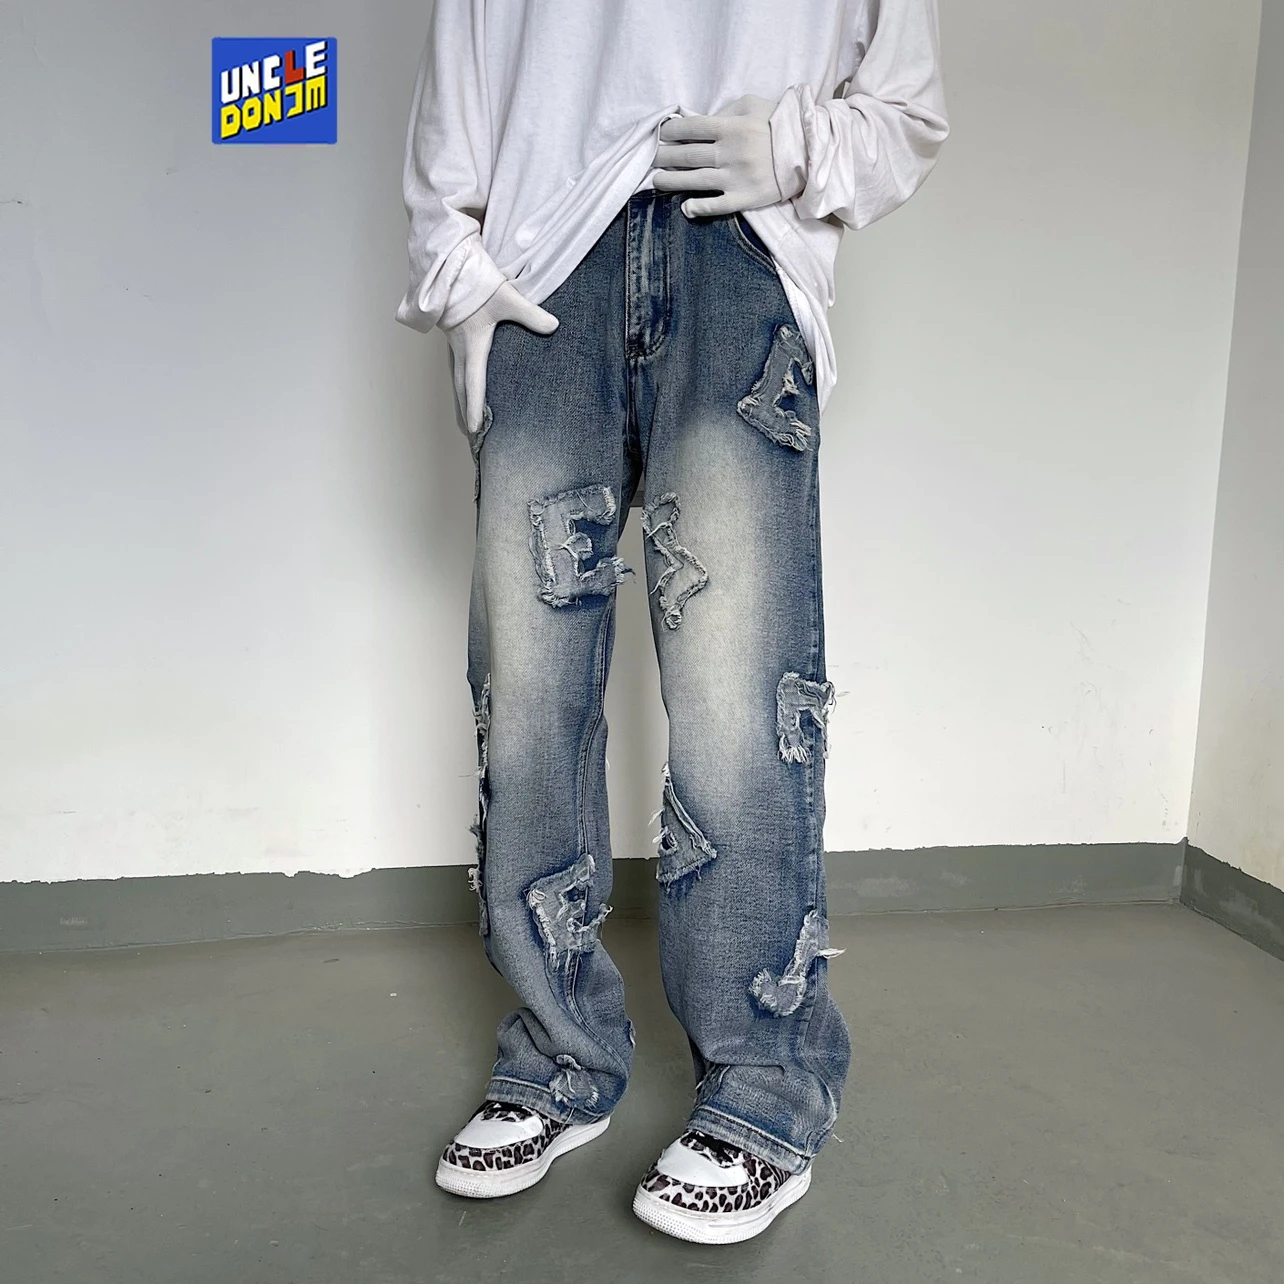 Permanentemente diseño Desacuerdo UNCLEDONJM pantalones vaqueros vintage para hombre, jeans desgastados y  holgados de estilo hip hop, jeans de diseñador para novio|Pantalones  vaqueros| - AliExpress